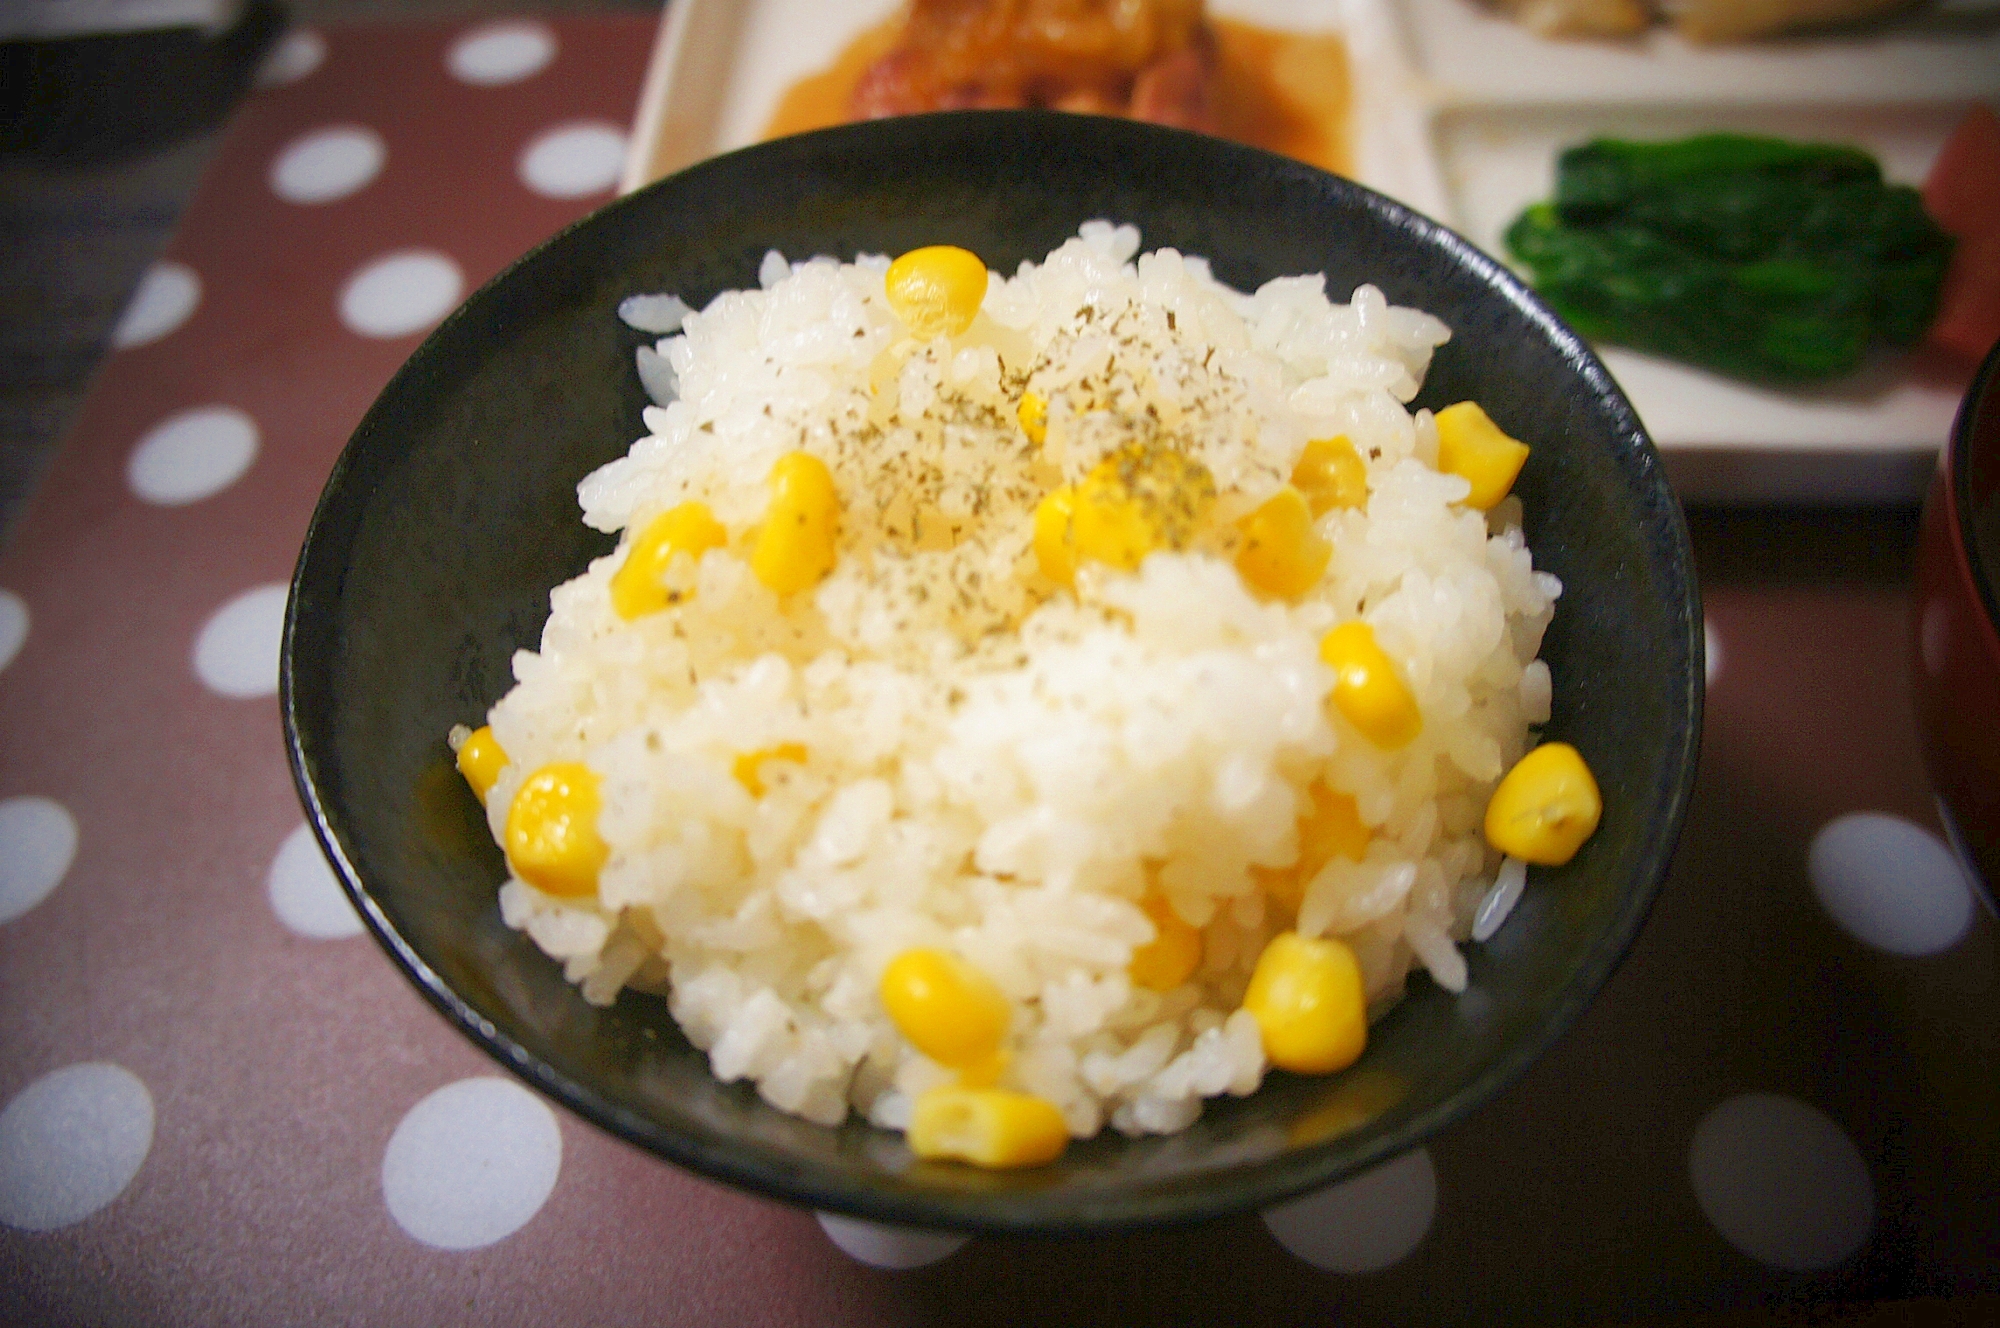 子供がよく食べる コーンの炊き込みご飯 レシピ 作り方 By Rrrrringo 楽天レシピ